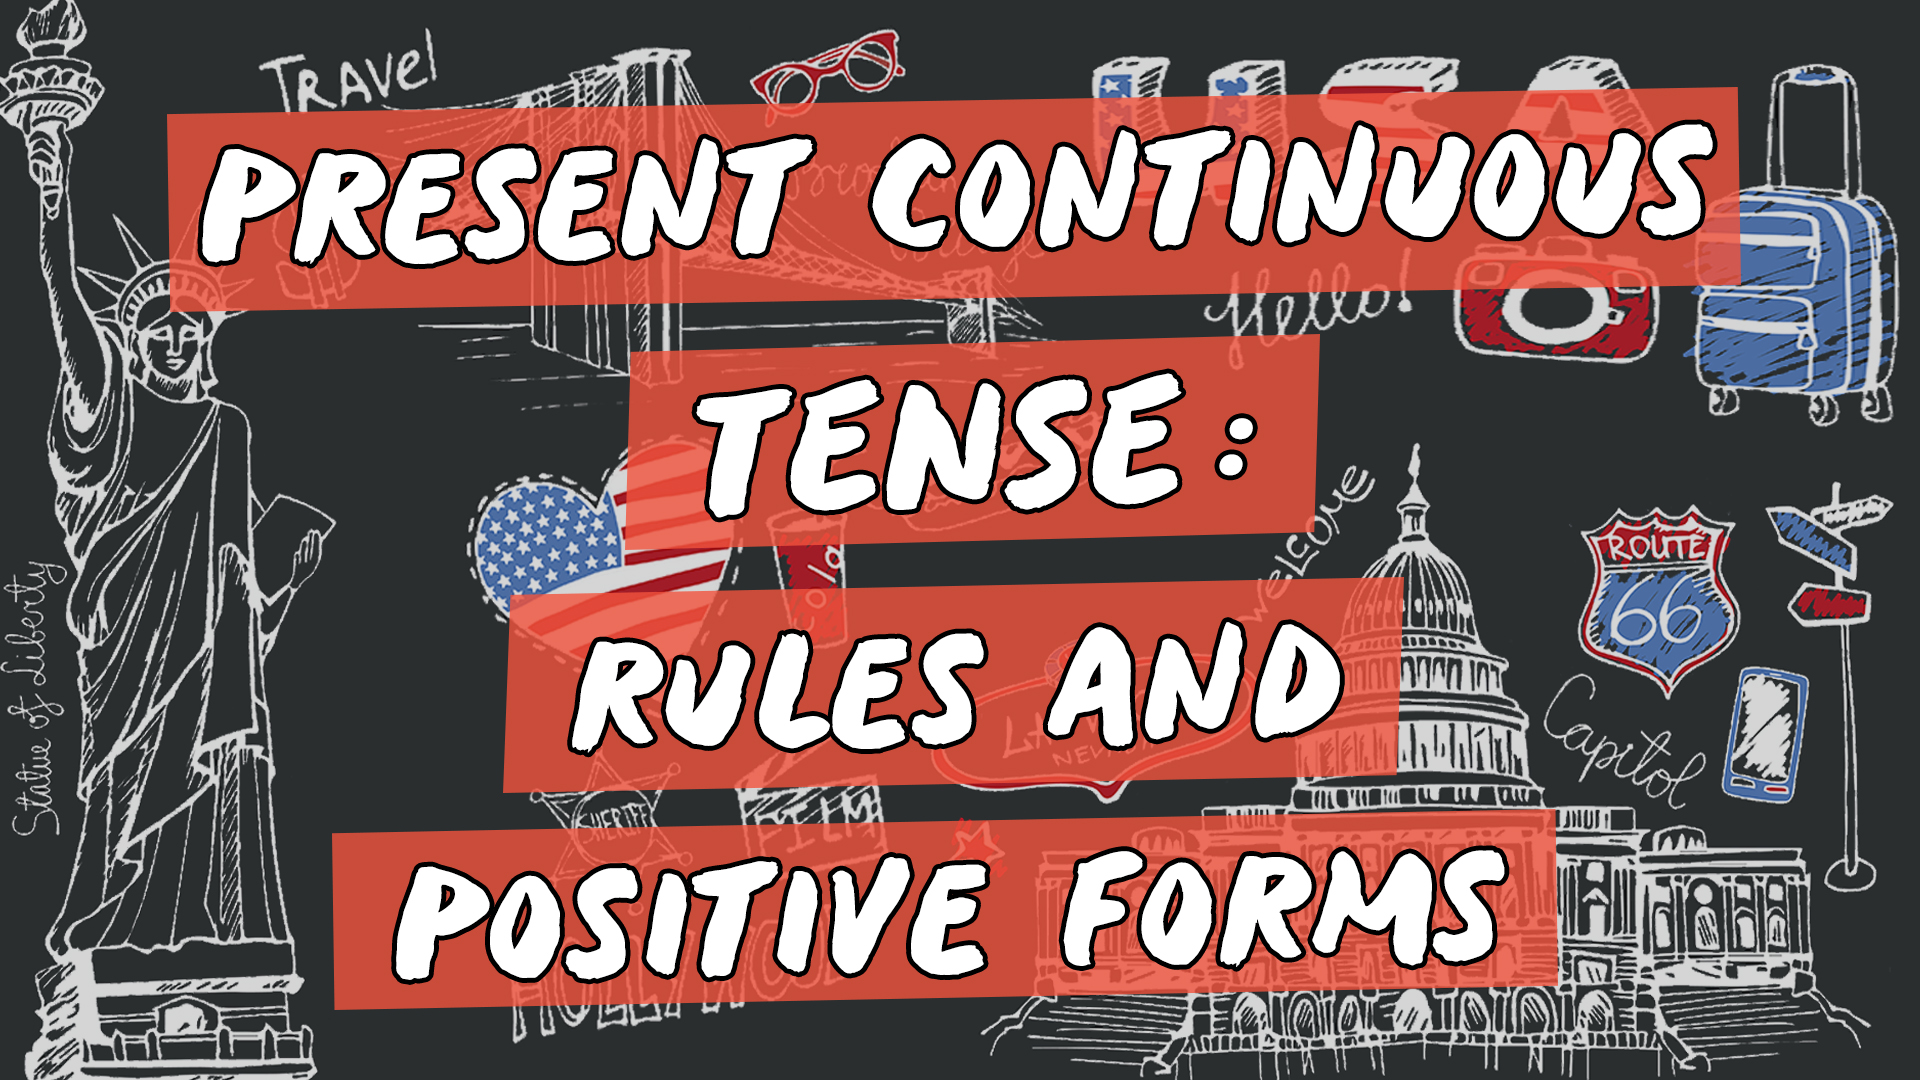 Escrito"Present Continuous Tense: Rules and Positive Forms" sobre representação de vários elementos da cultura do inglês americano.